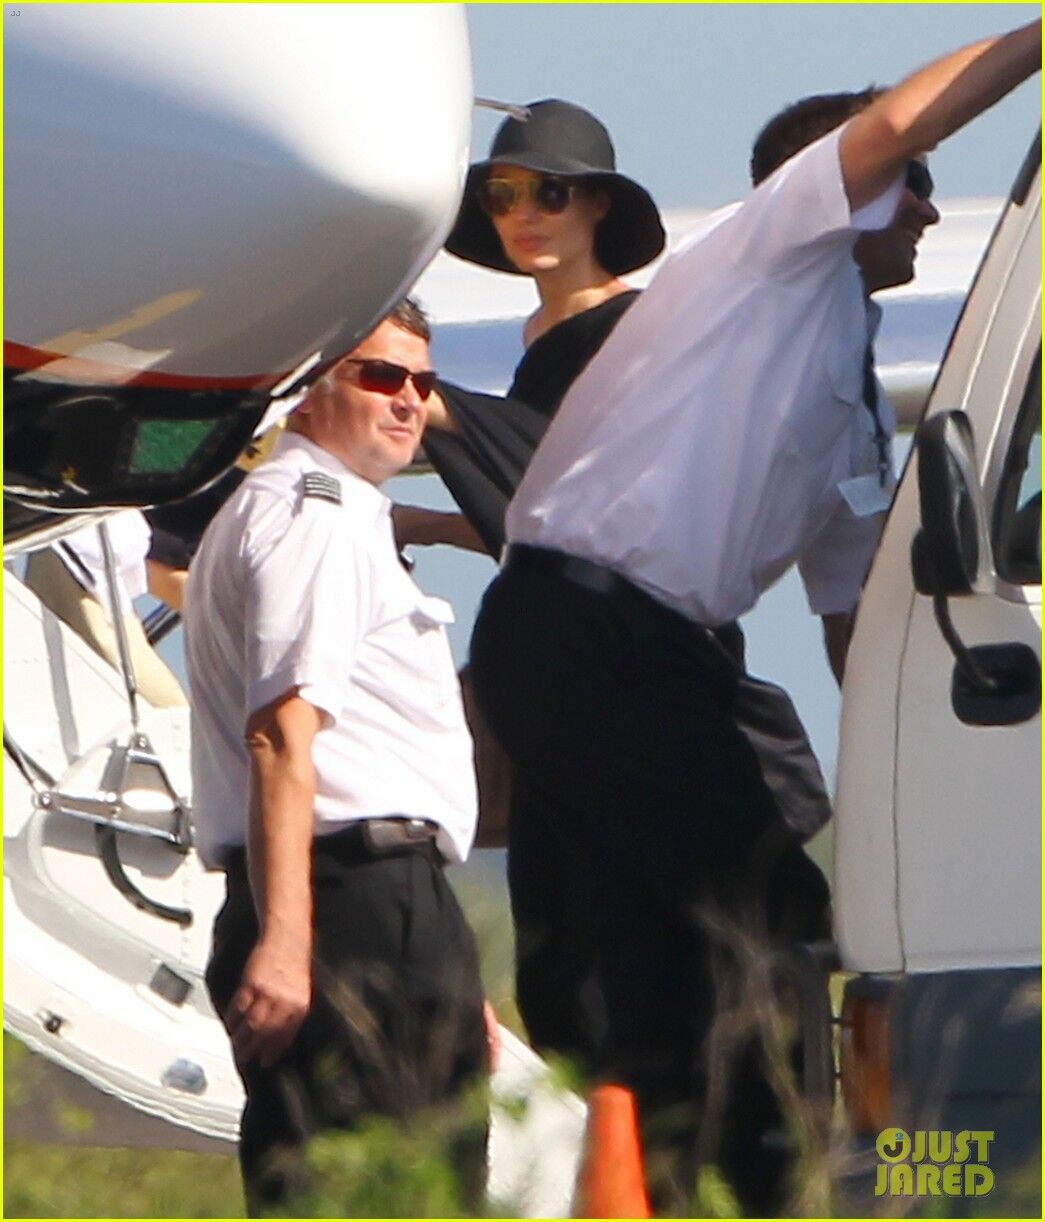 Джоли и Питт катают детей на катере. Фото